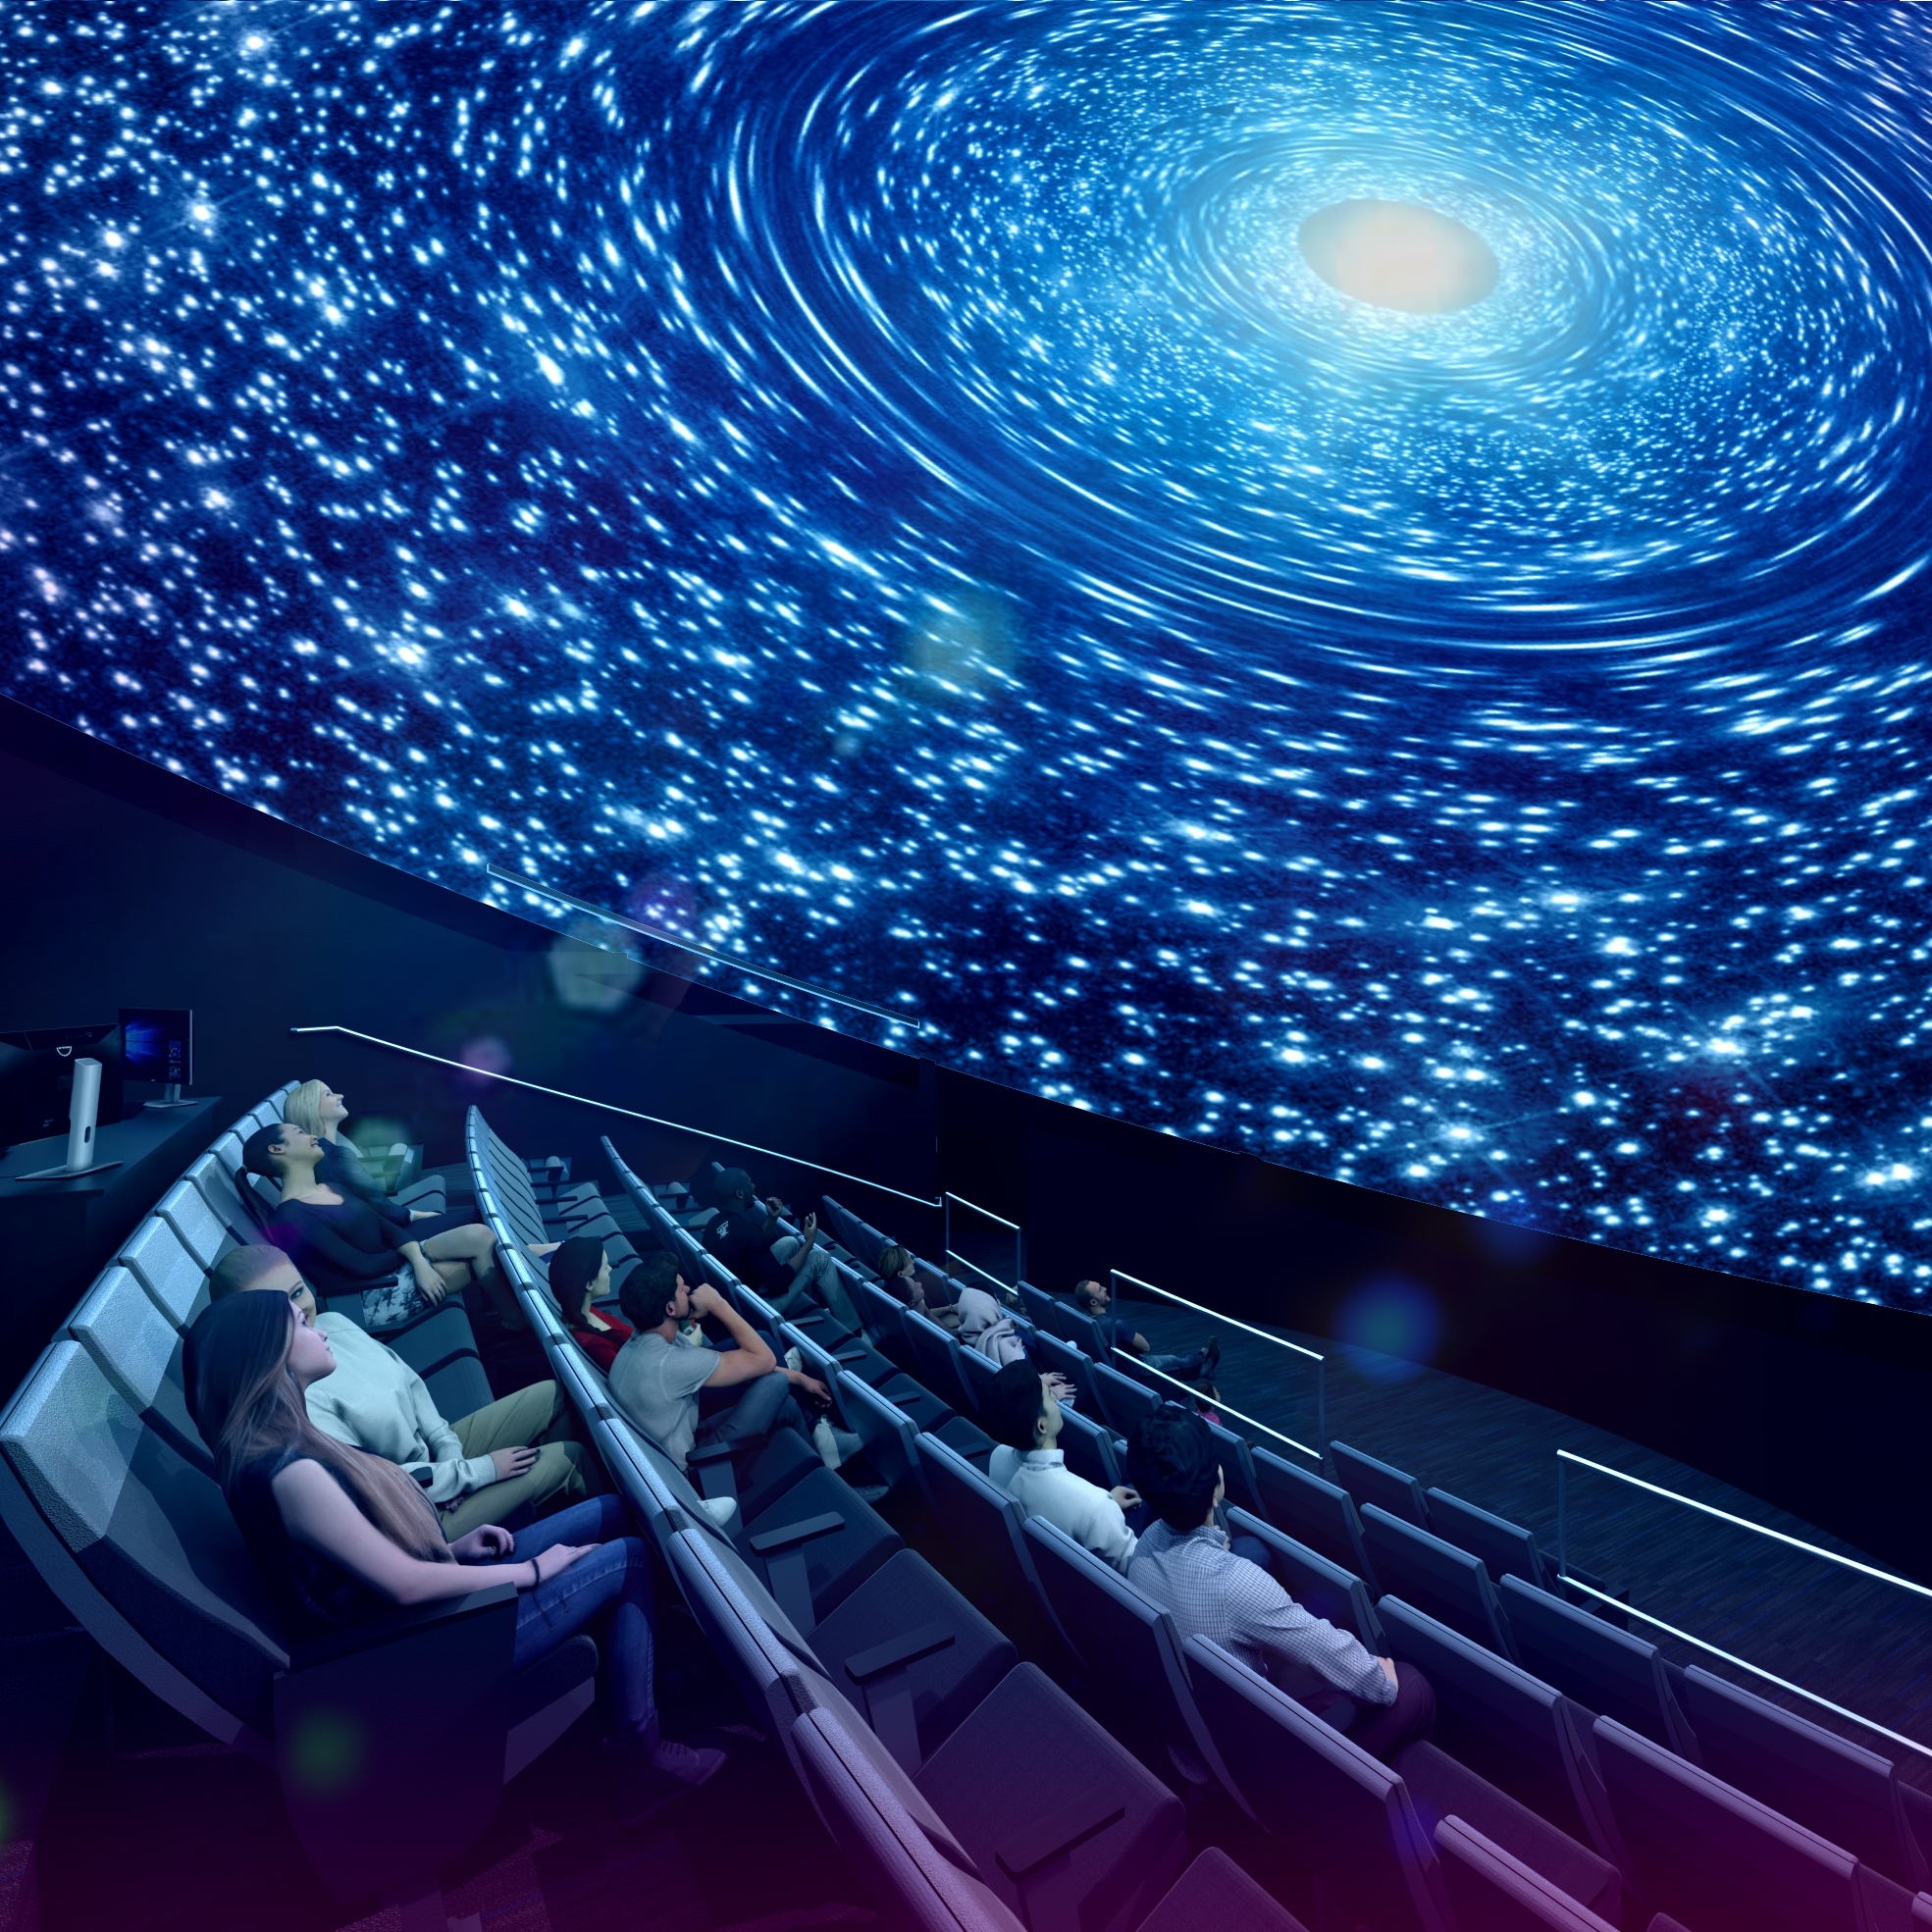 Planetarium – Christa McAuliffe Space Center